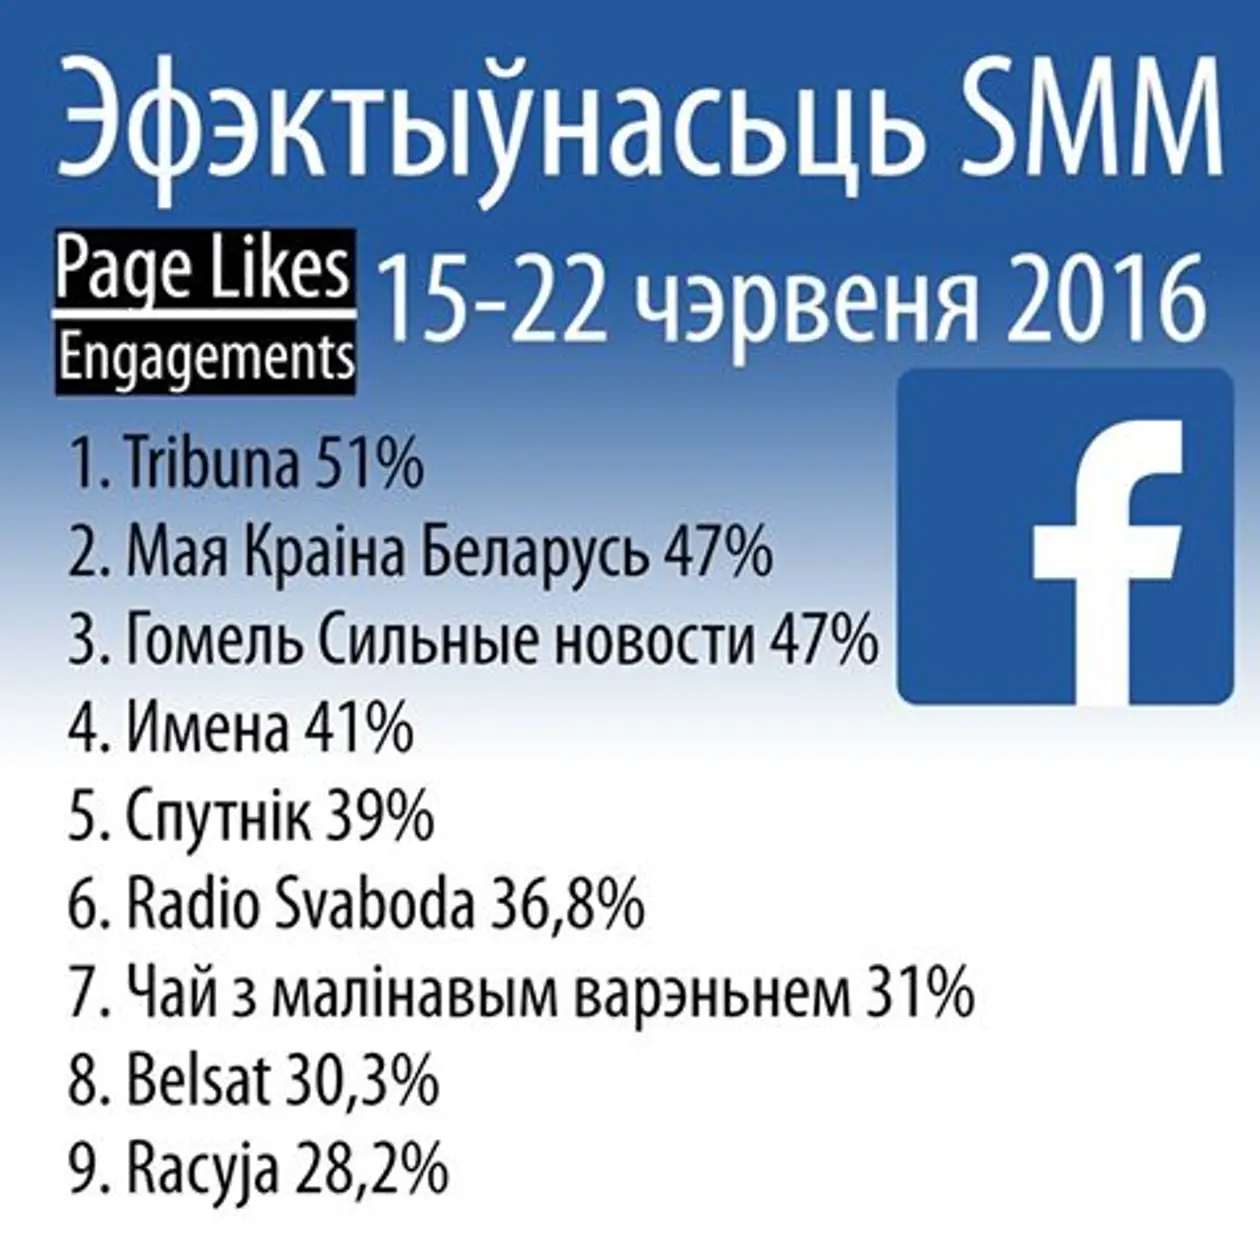 Группа «Трибуны» в Facebook лидирует среди всех белорусских СМИ по активности подписчиков